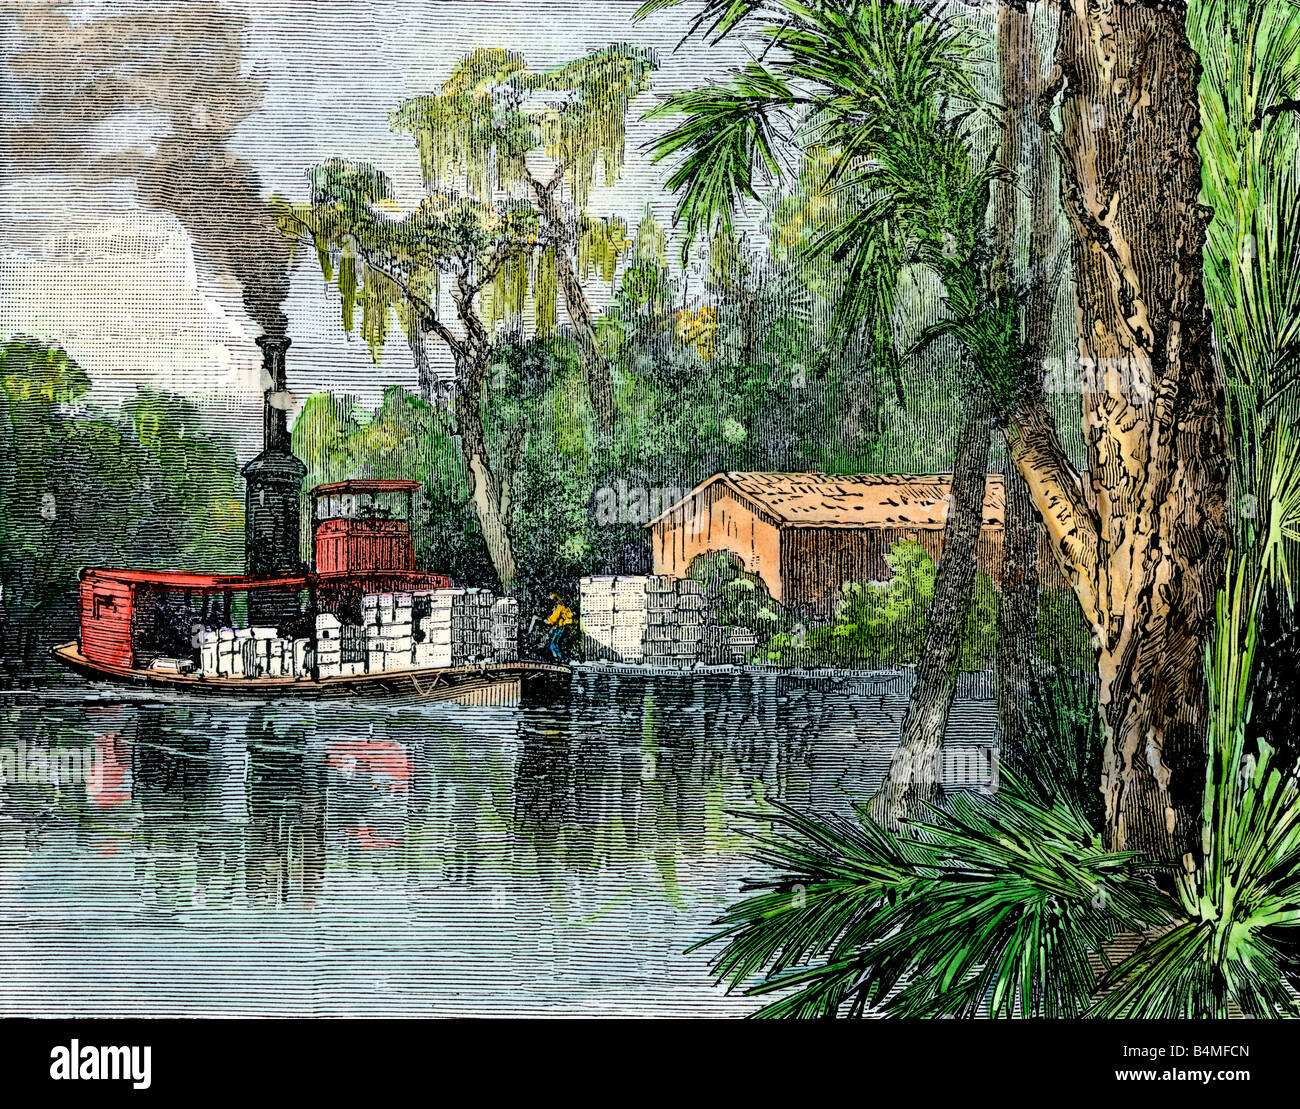 Steamboat Baumwolle laden auf einer Plantage river Wharf in den USA Süd 1800. Hand - farbige Holzschnitt Stockfoto